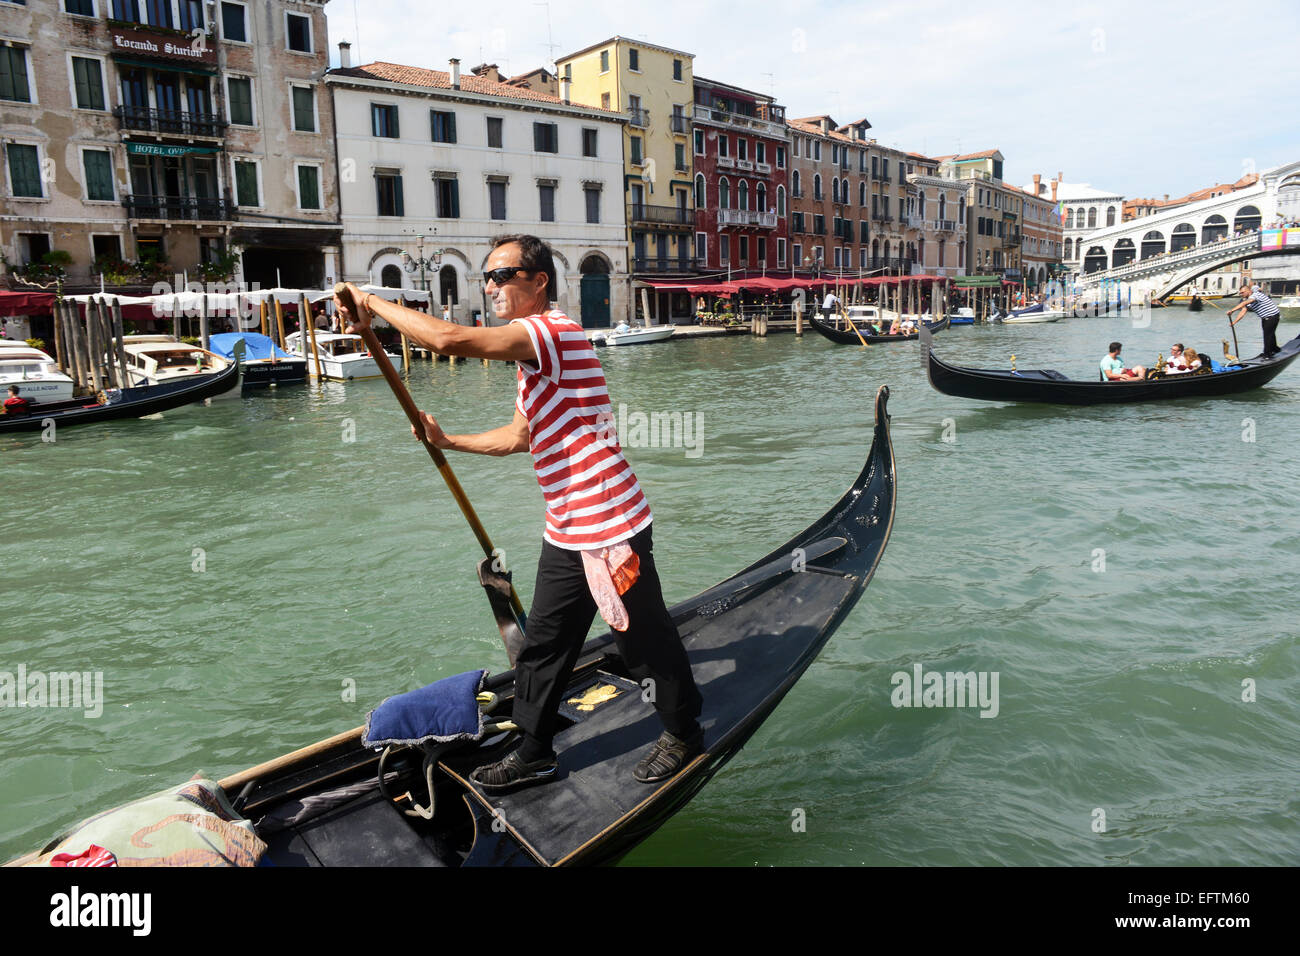 Gondolier steers sa gondole et le long du Grand Canal, Venise Italie. Banque D'Images